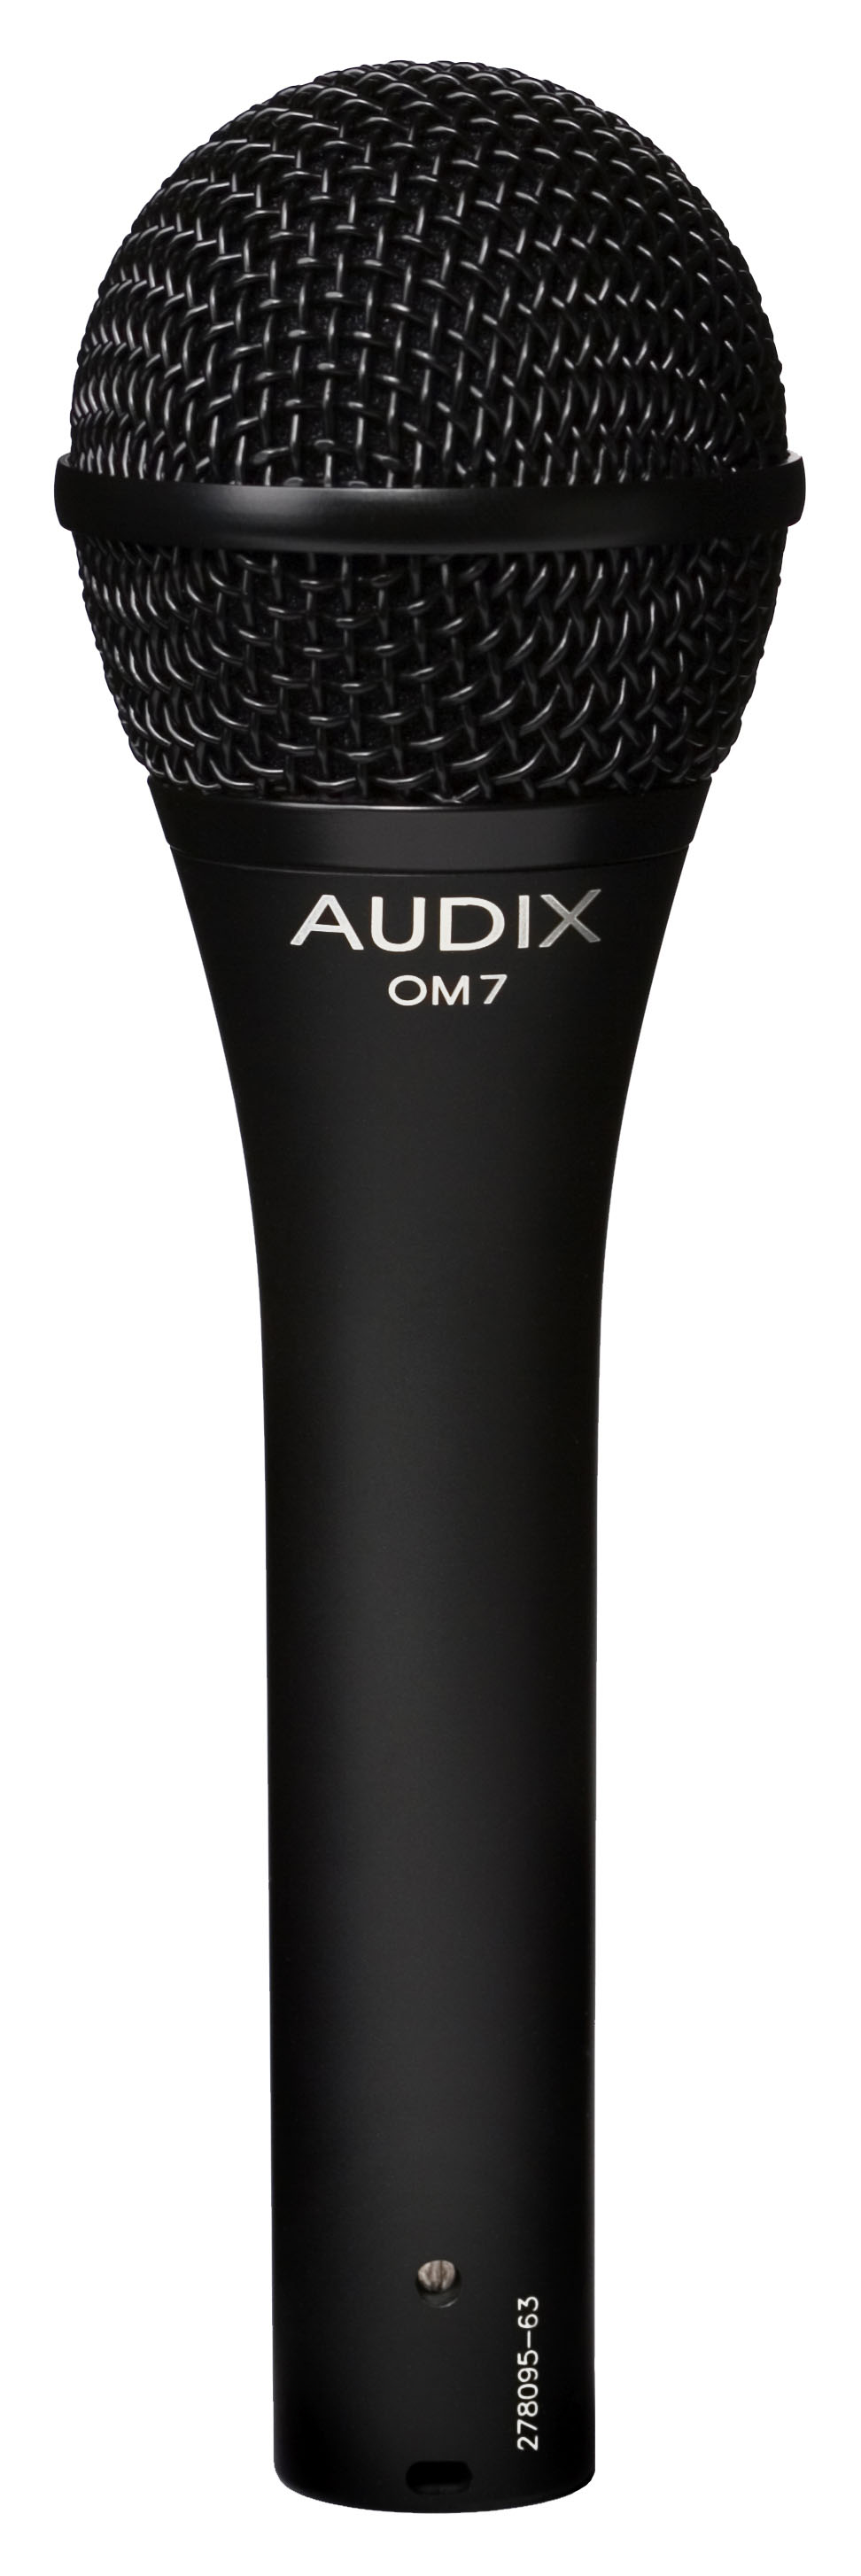 Ручные микрофоны AUDIX OM7 ручные микрофоны audix om3